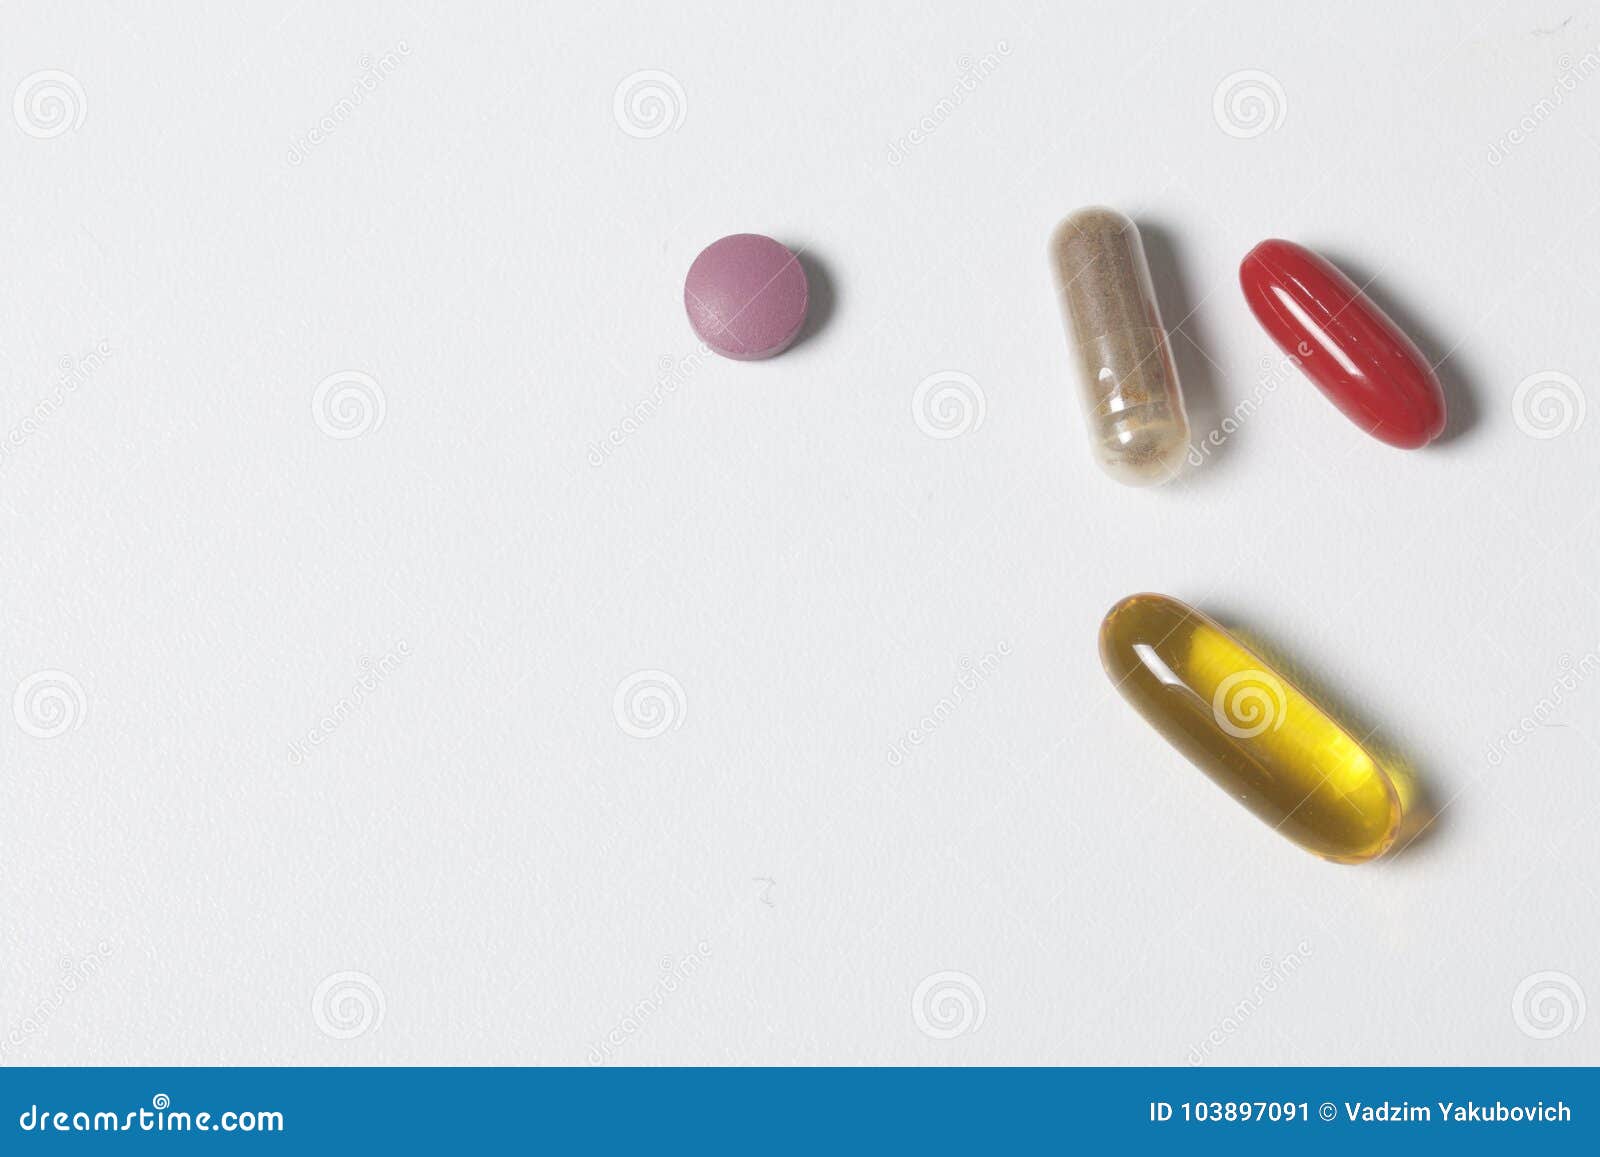 Почему таблетки в капсулах. Лекарства валяются на столе.